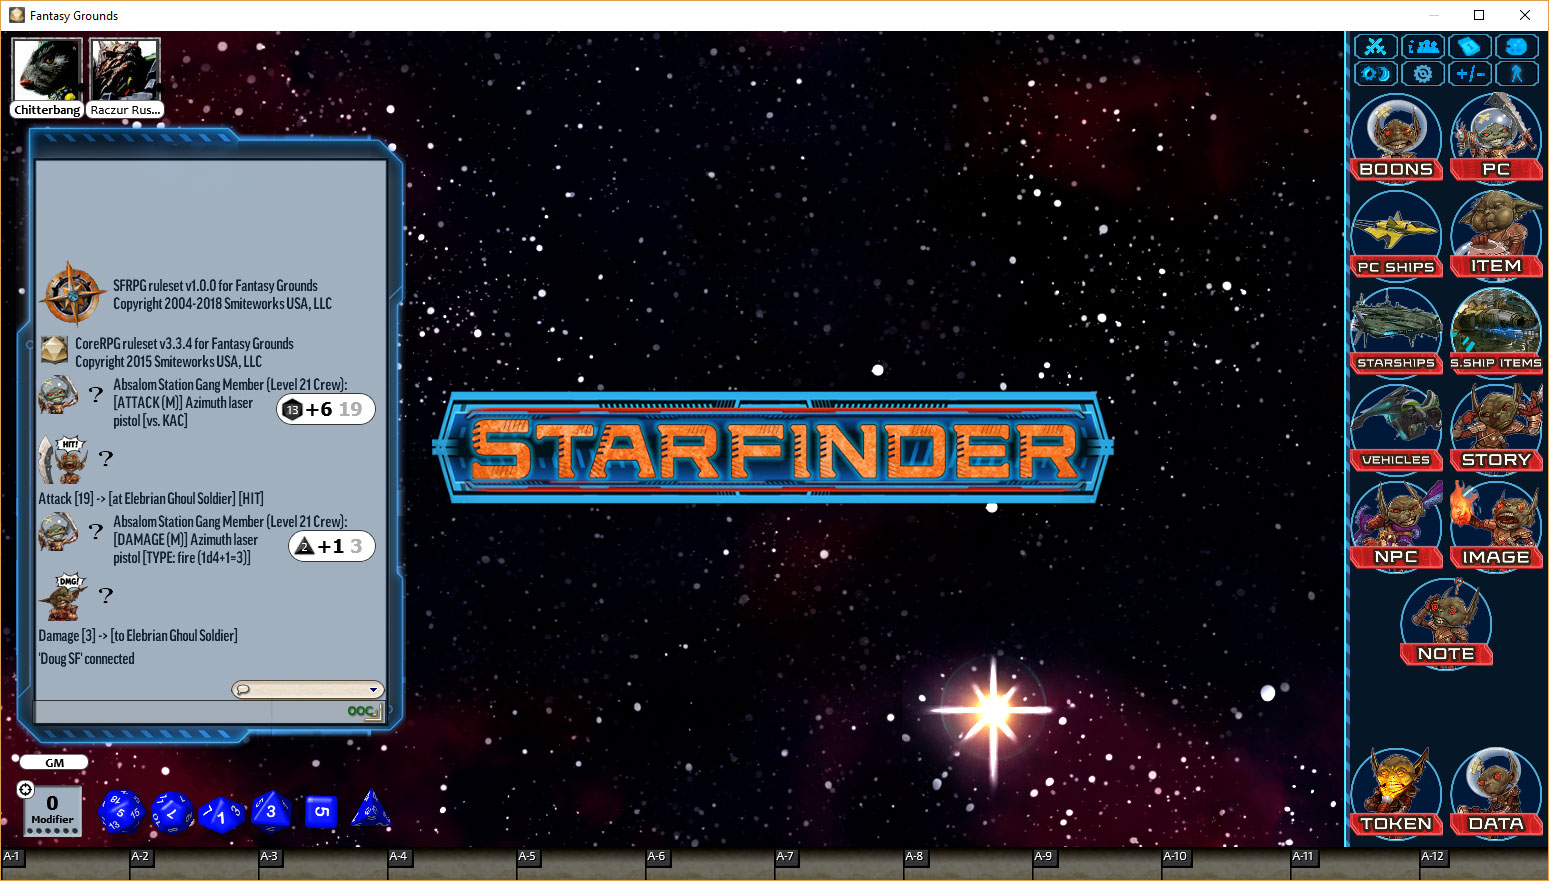 _Starfinder1.jpg